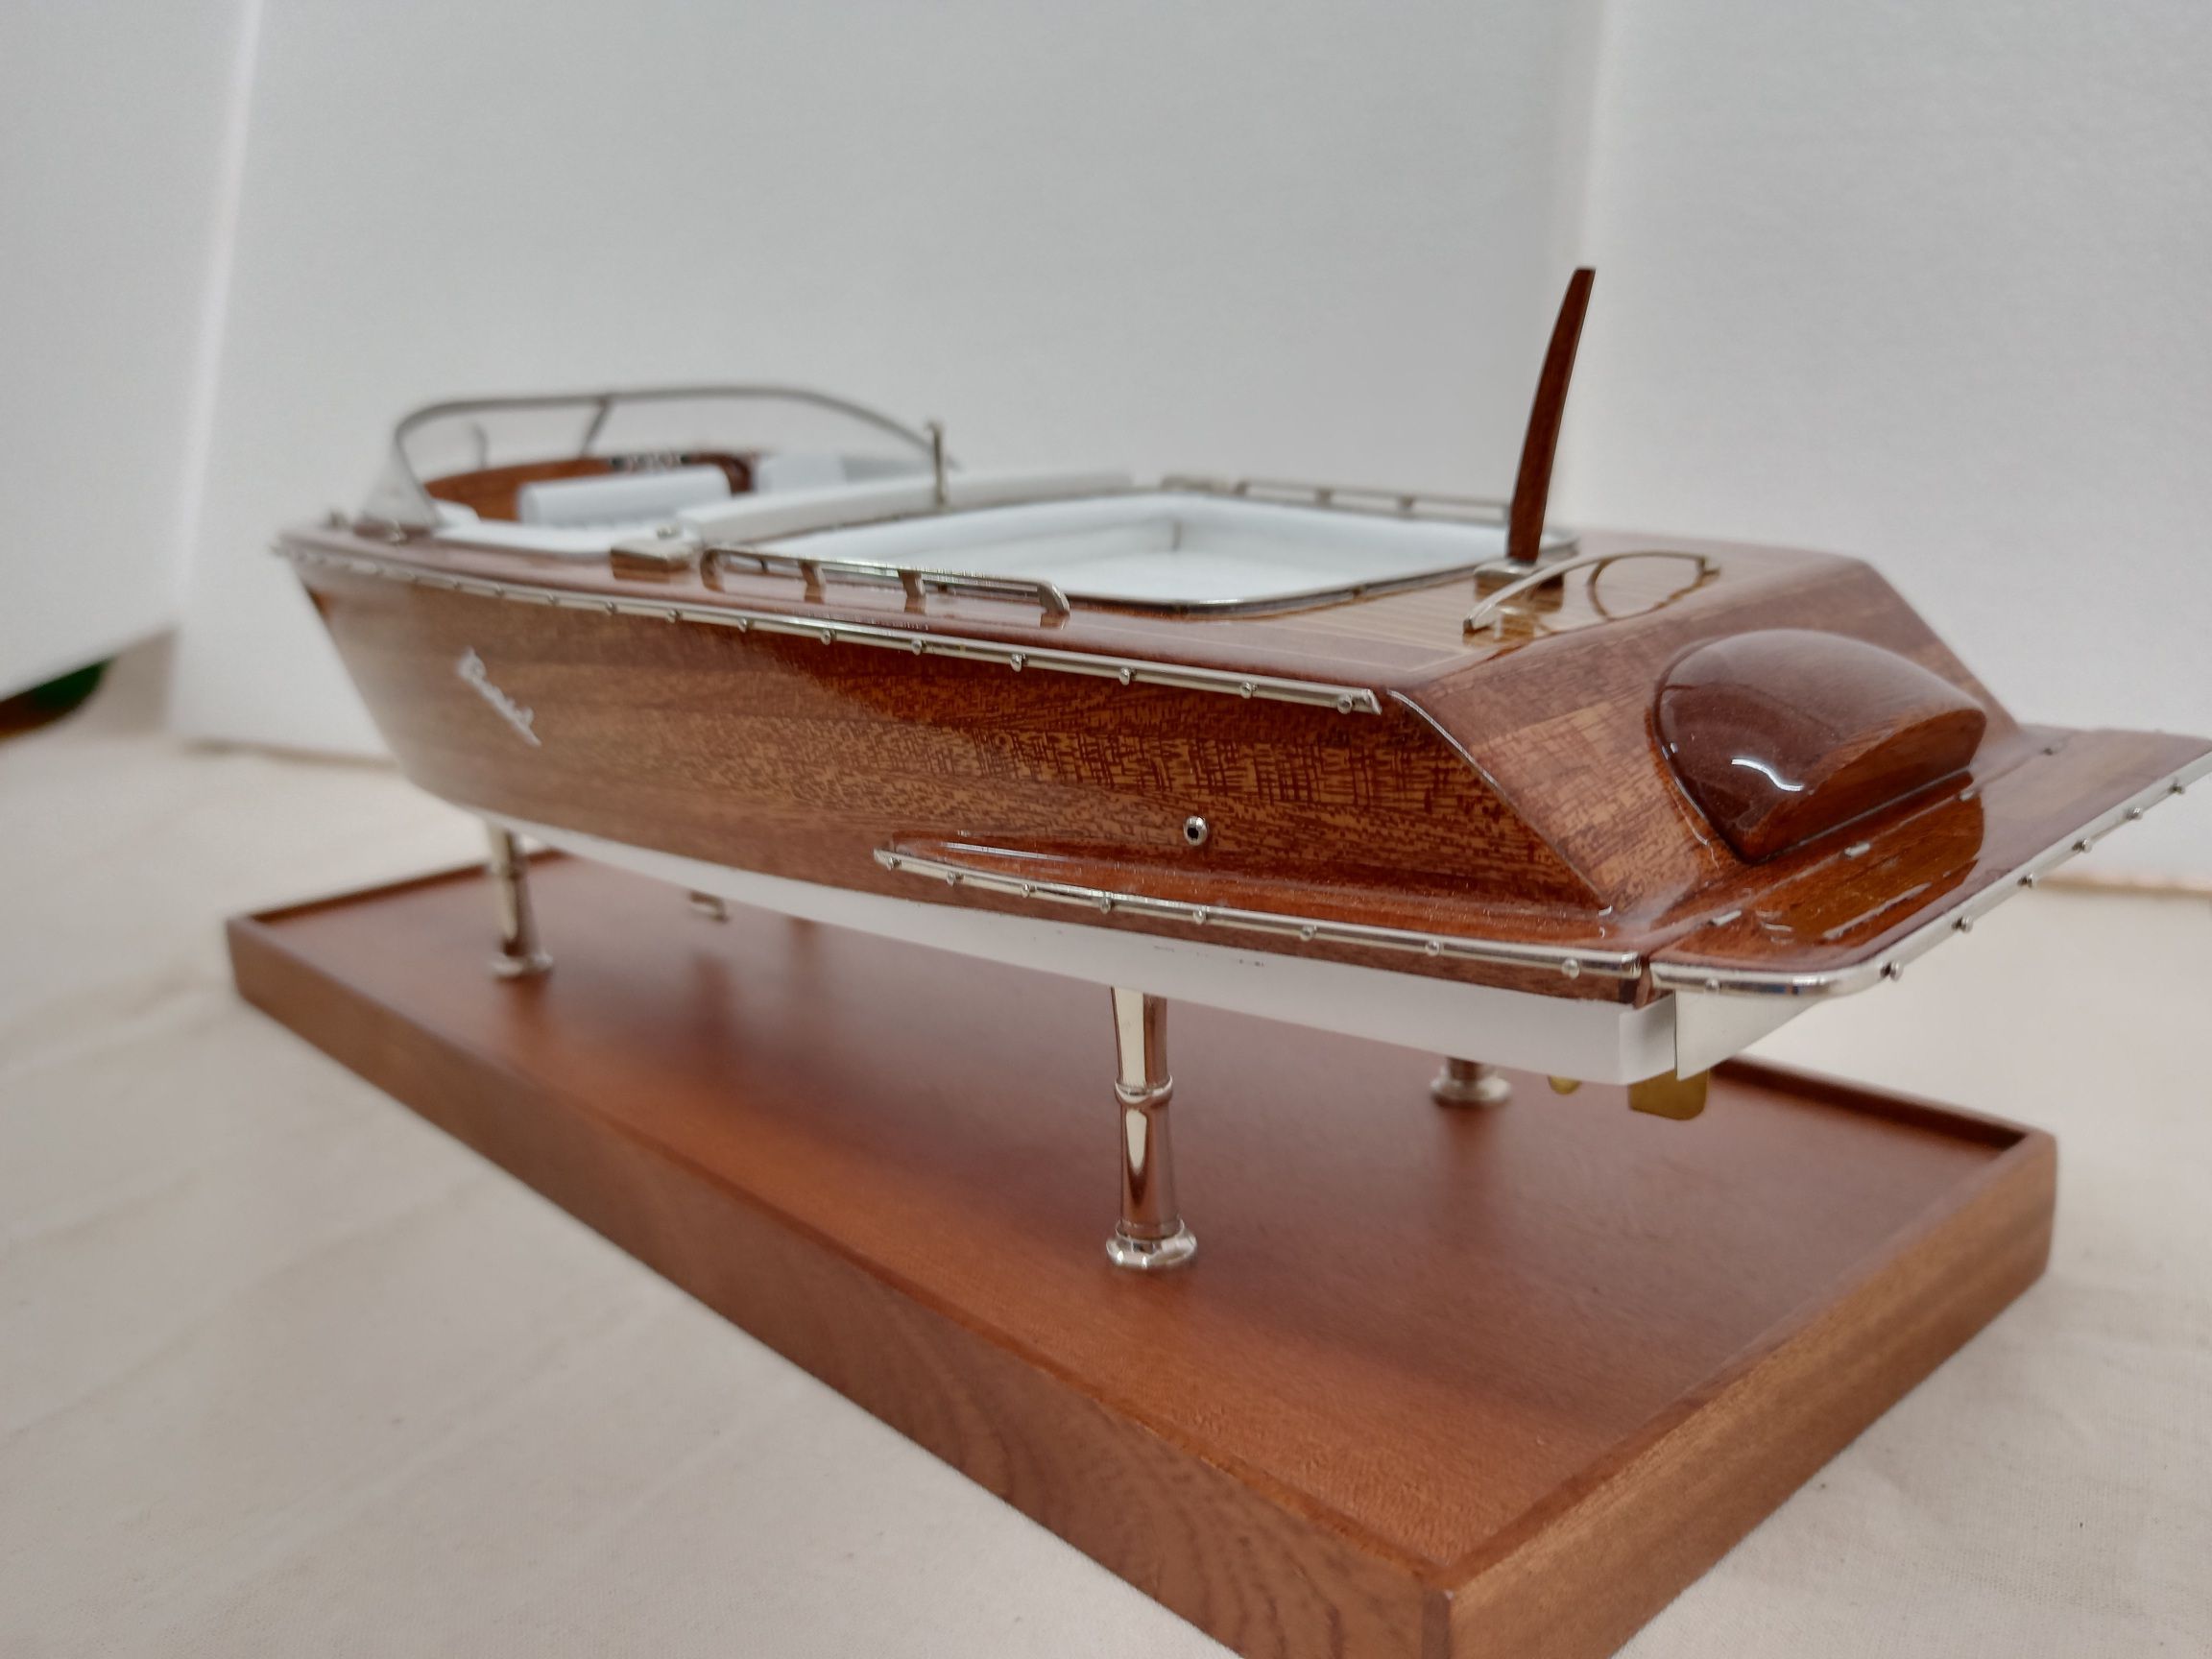 Boesch 710 Model Boat – PSM5432